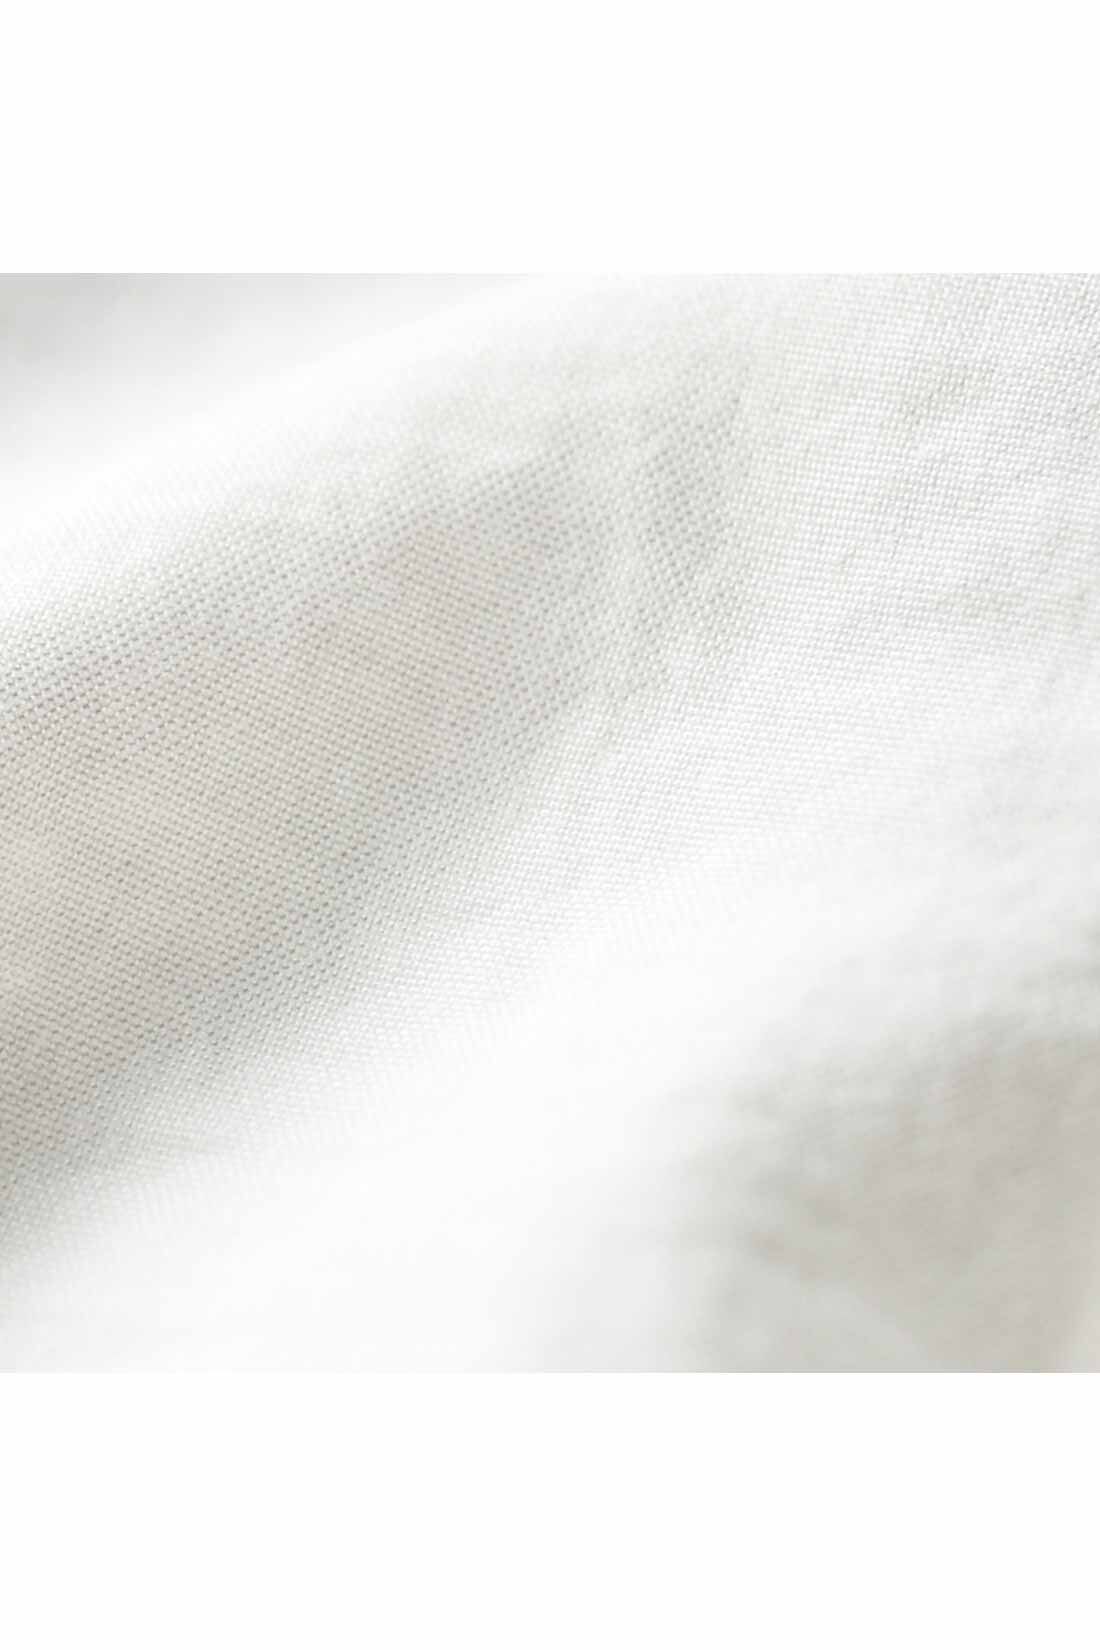 IEDIT[イディット]　繊細な表情がエレガントなリバーレース遣いブラウス〈オフホワイト〉|ヴィンテージのような風合いのある表面感の布はく素材。